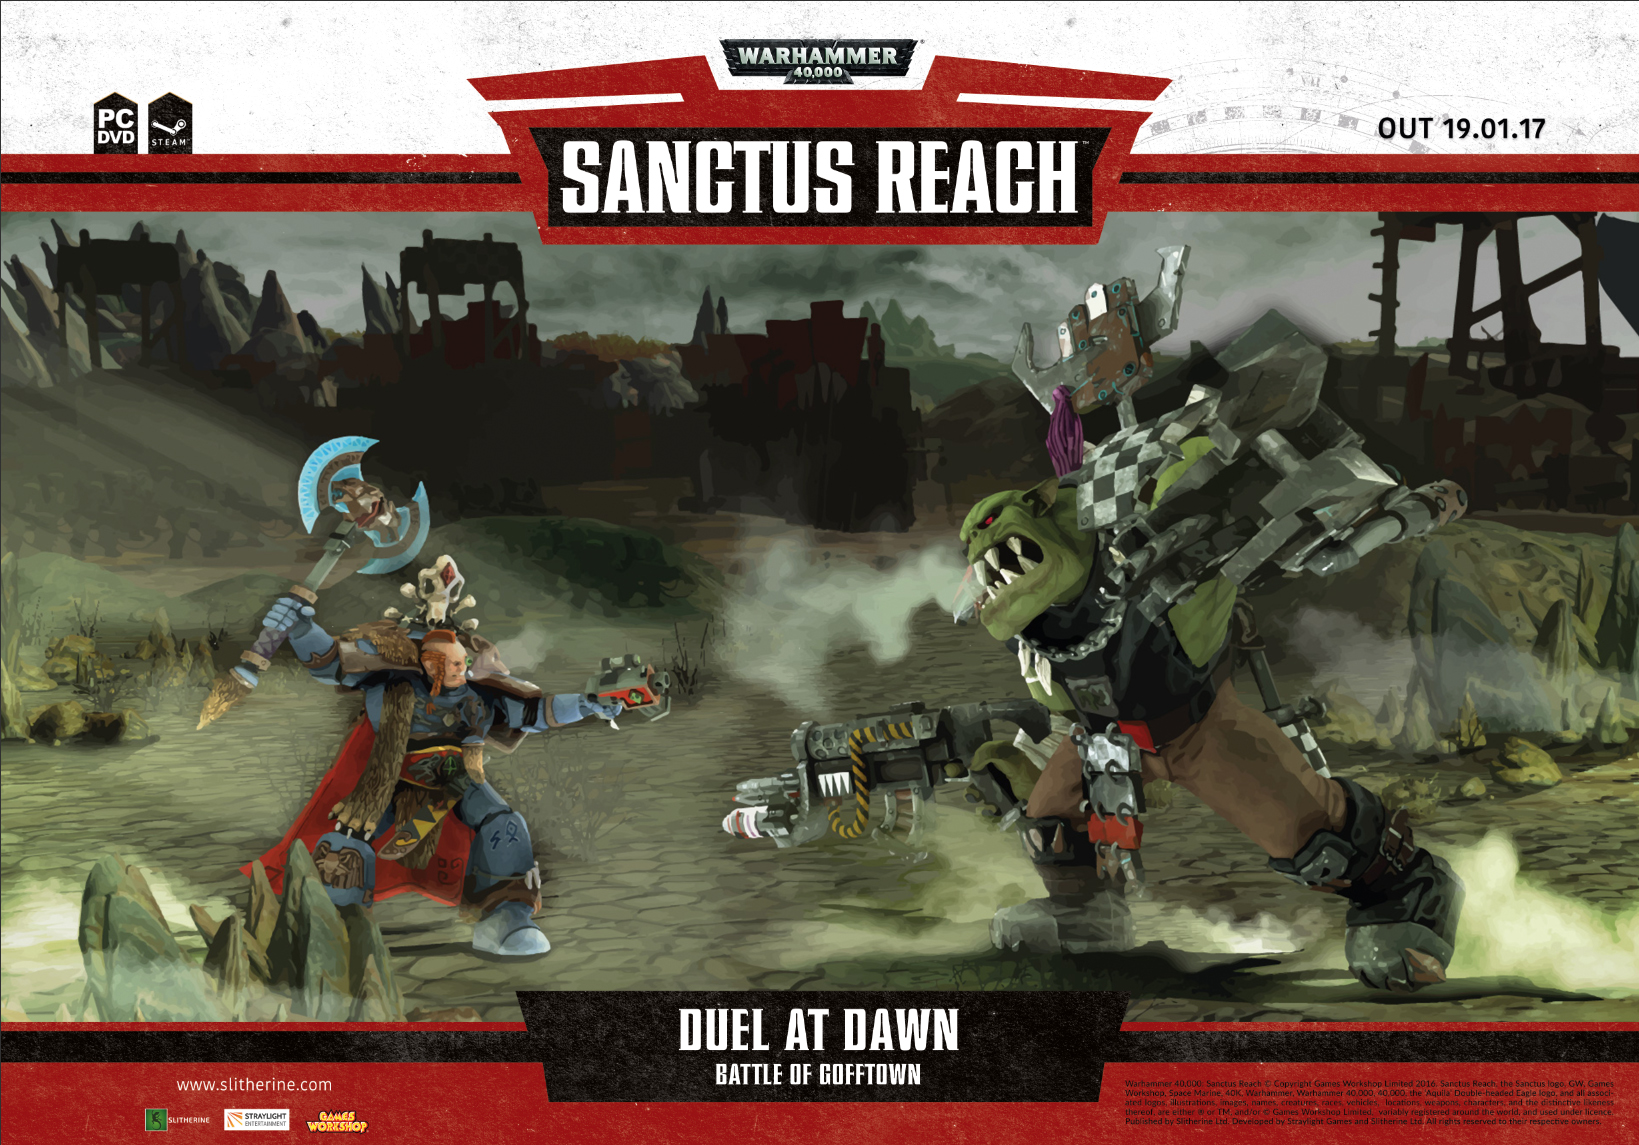 Warhammer 40,000: Sanctus Reach #17